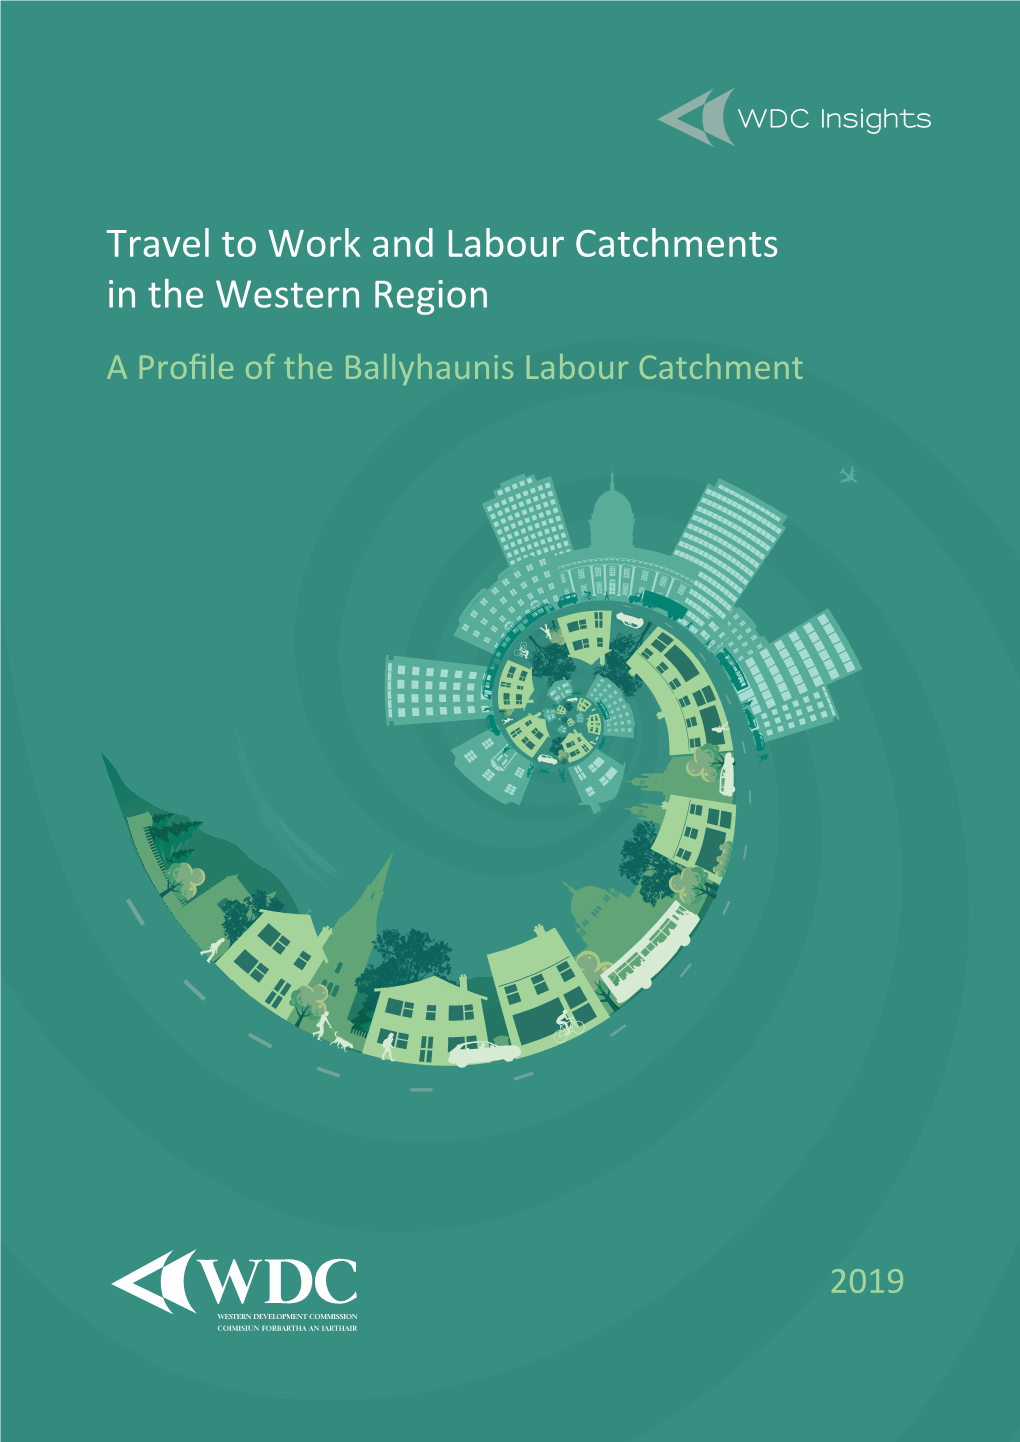 Ballyhaunis Labour Catchment